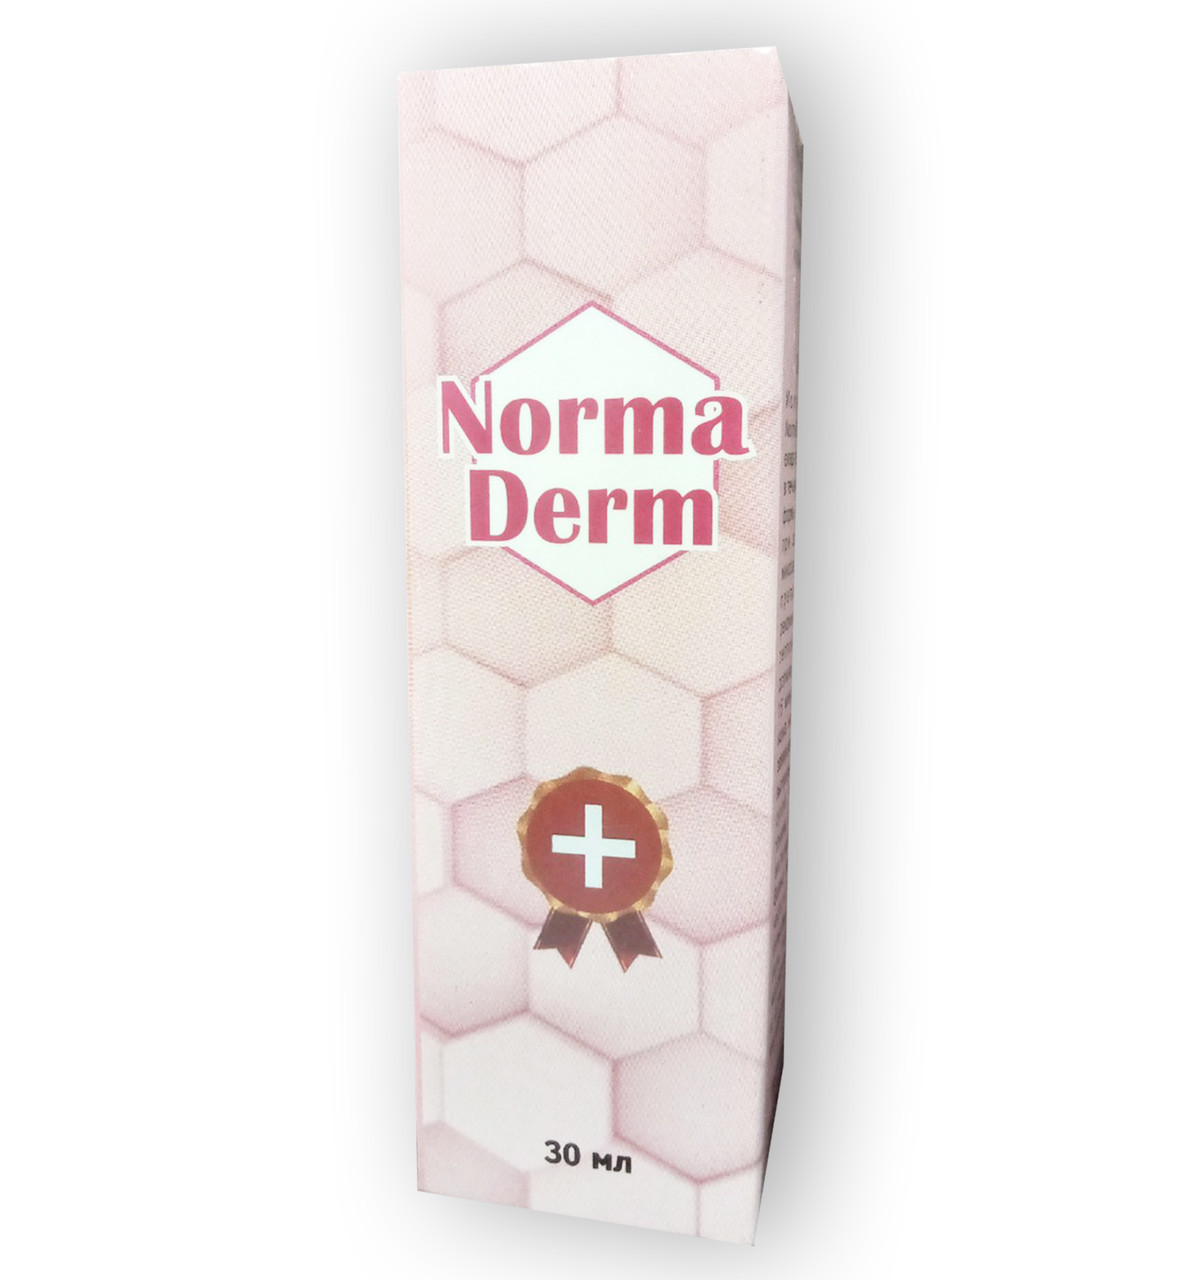 Norma Derm - засіб від грибка (Норма Дерм)